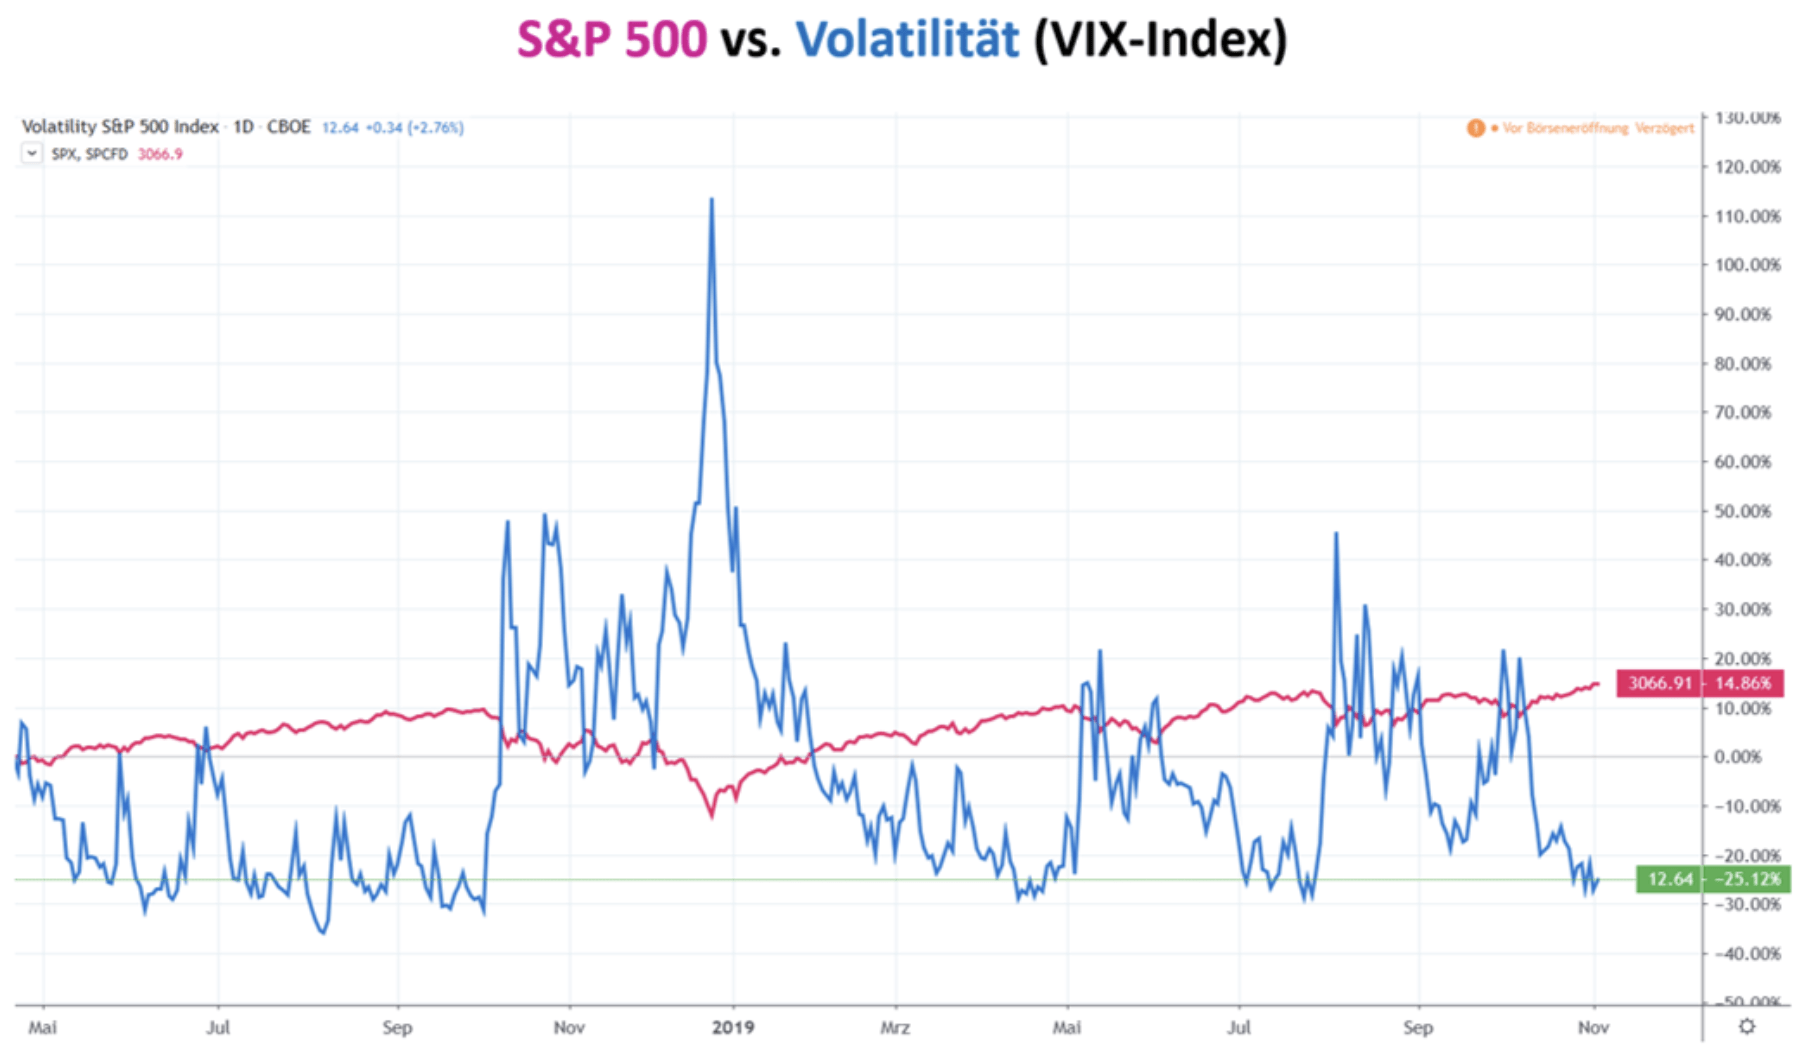 S&P 500 vs Volatilität VIX